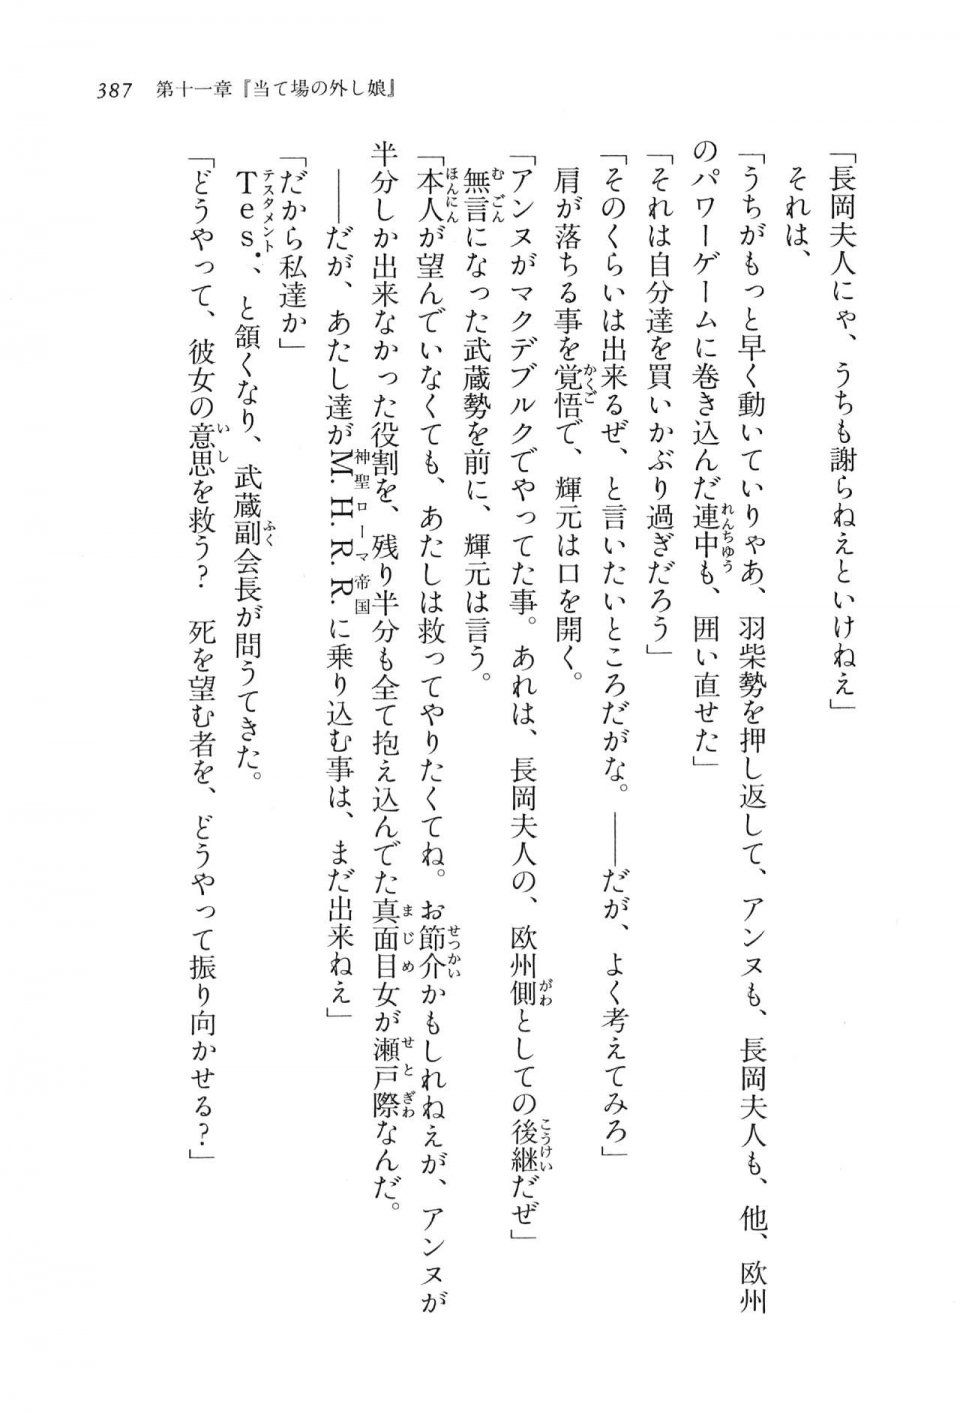 Kyoukai Senjou no Horizon LN Vol 16(7A) - Photo #387